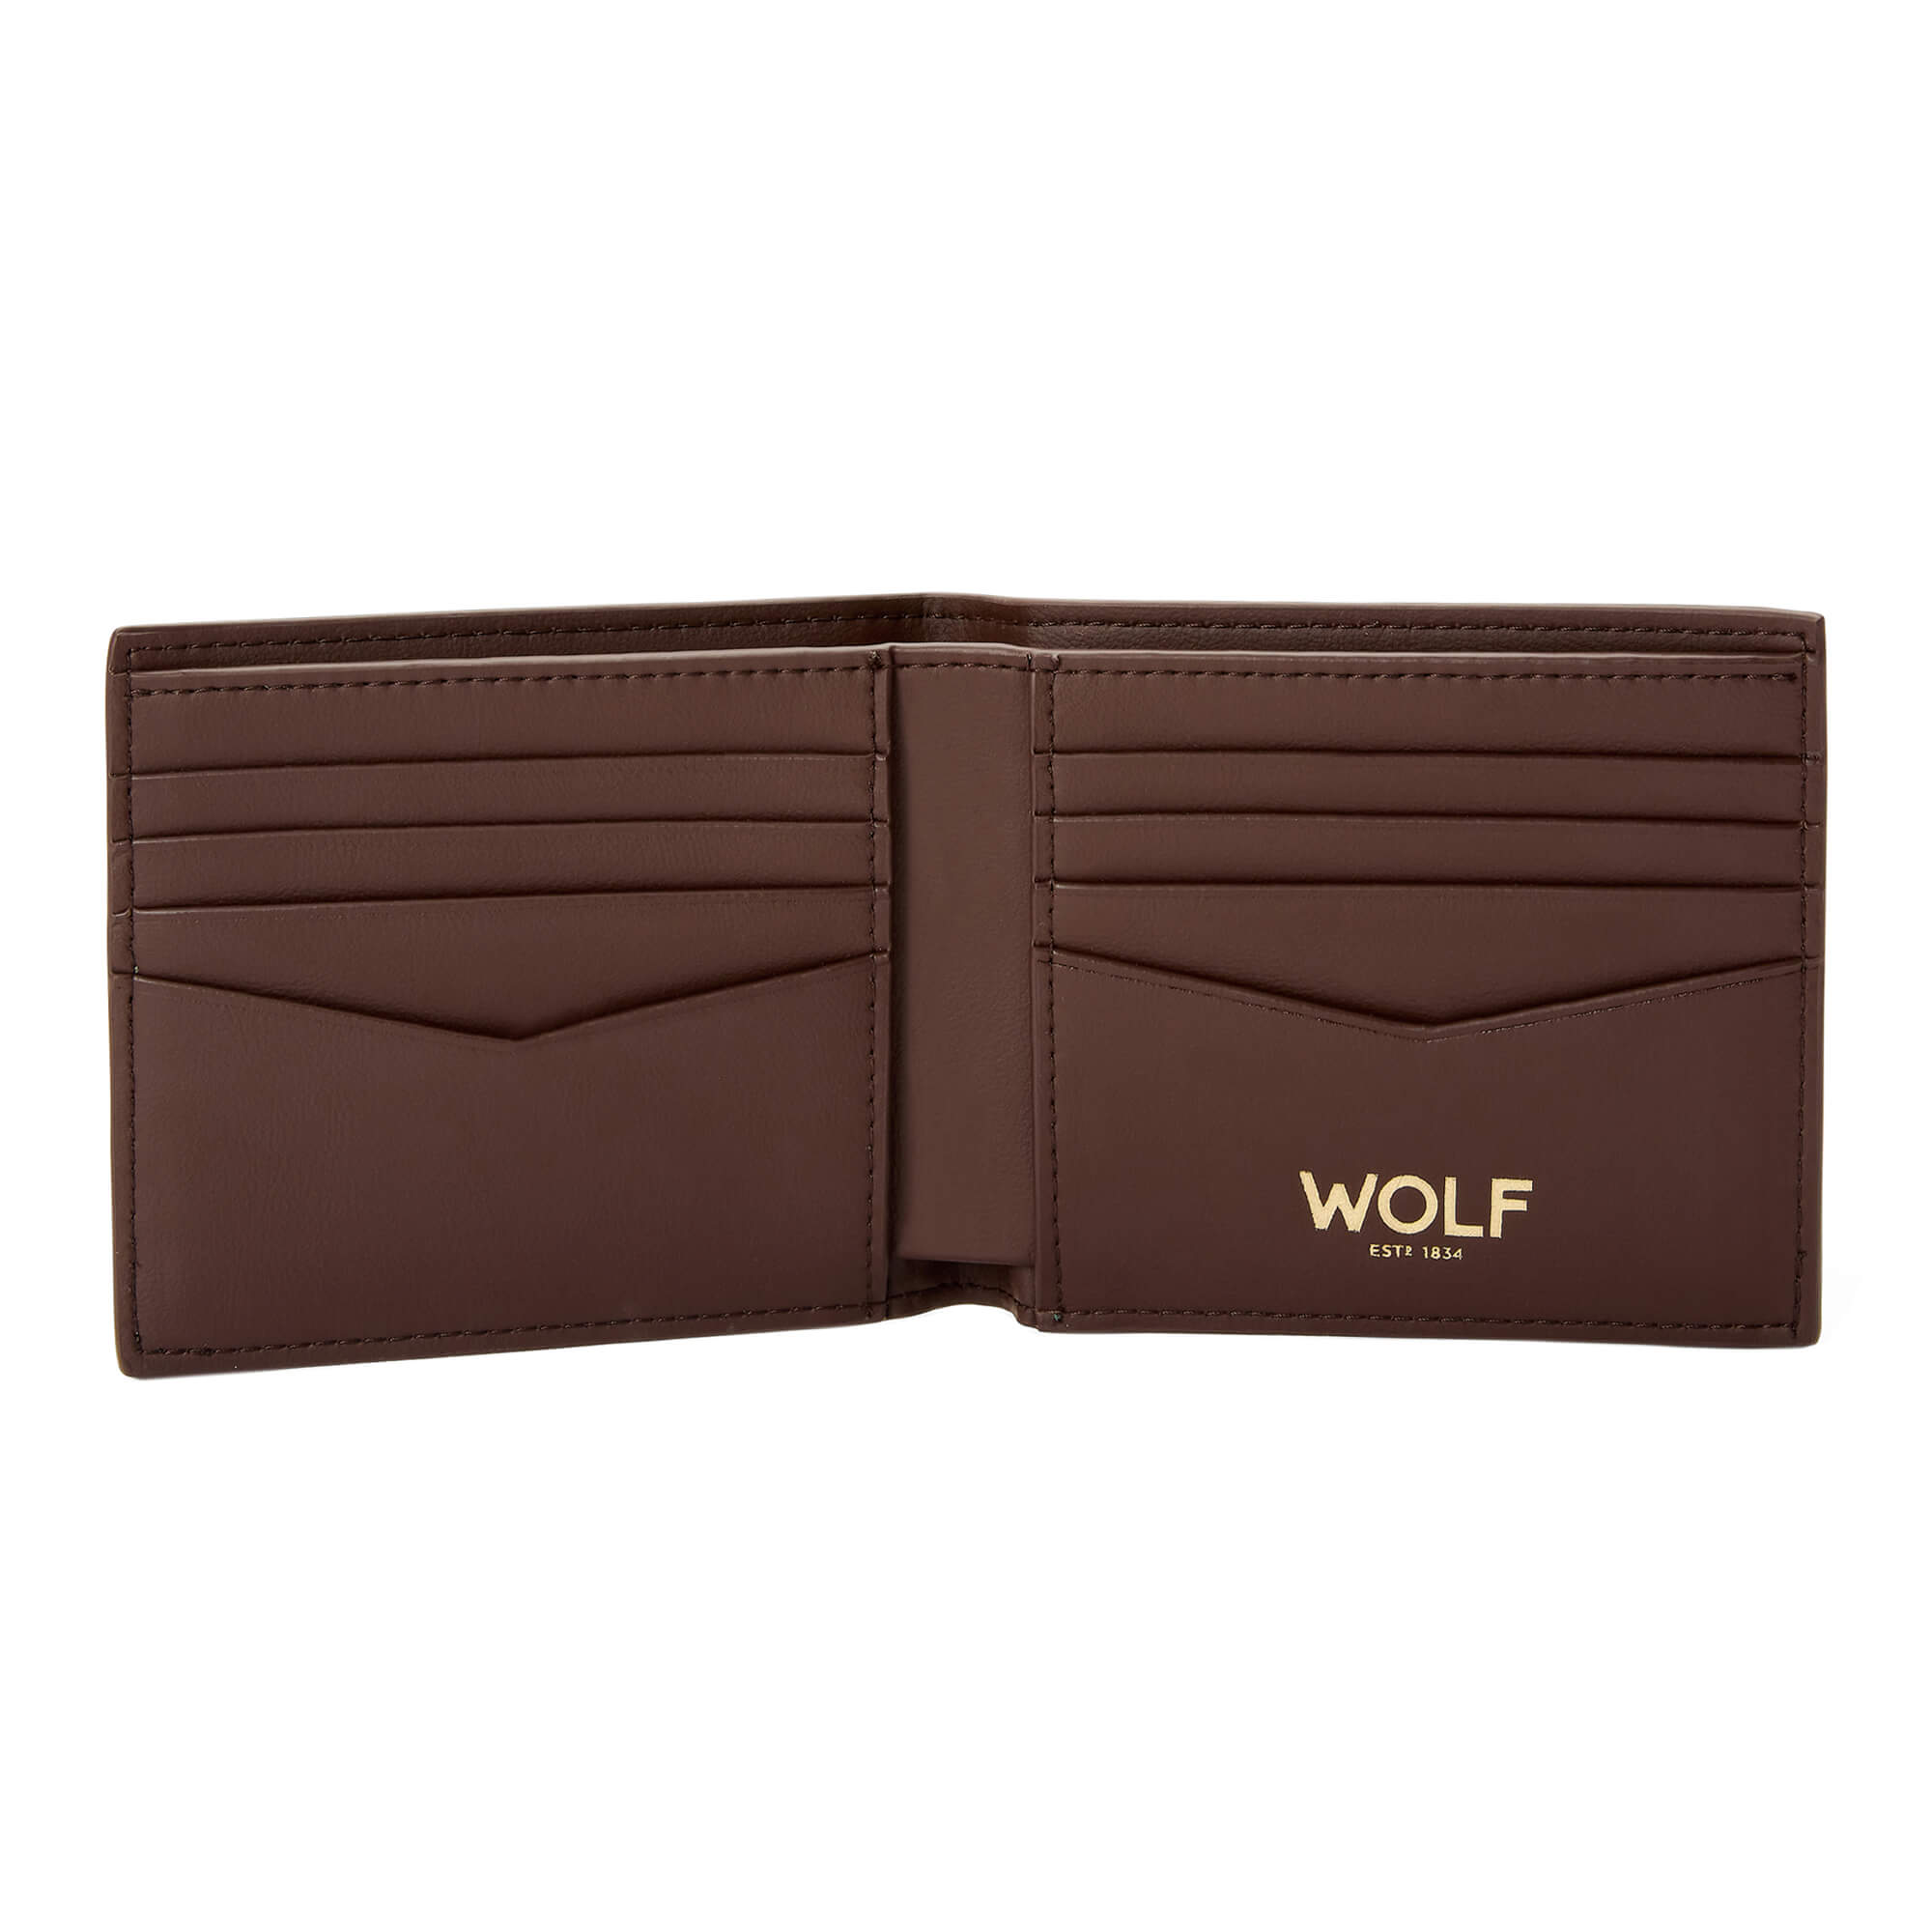 Wolf Signature Billfold Wallet - Brown